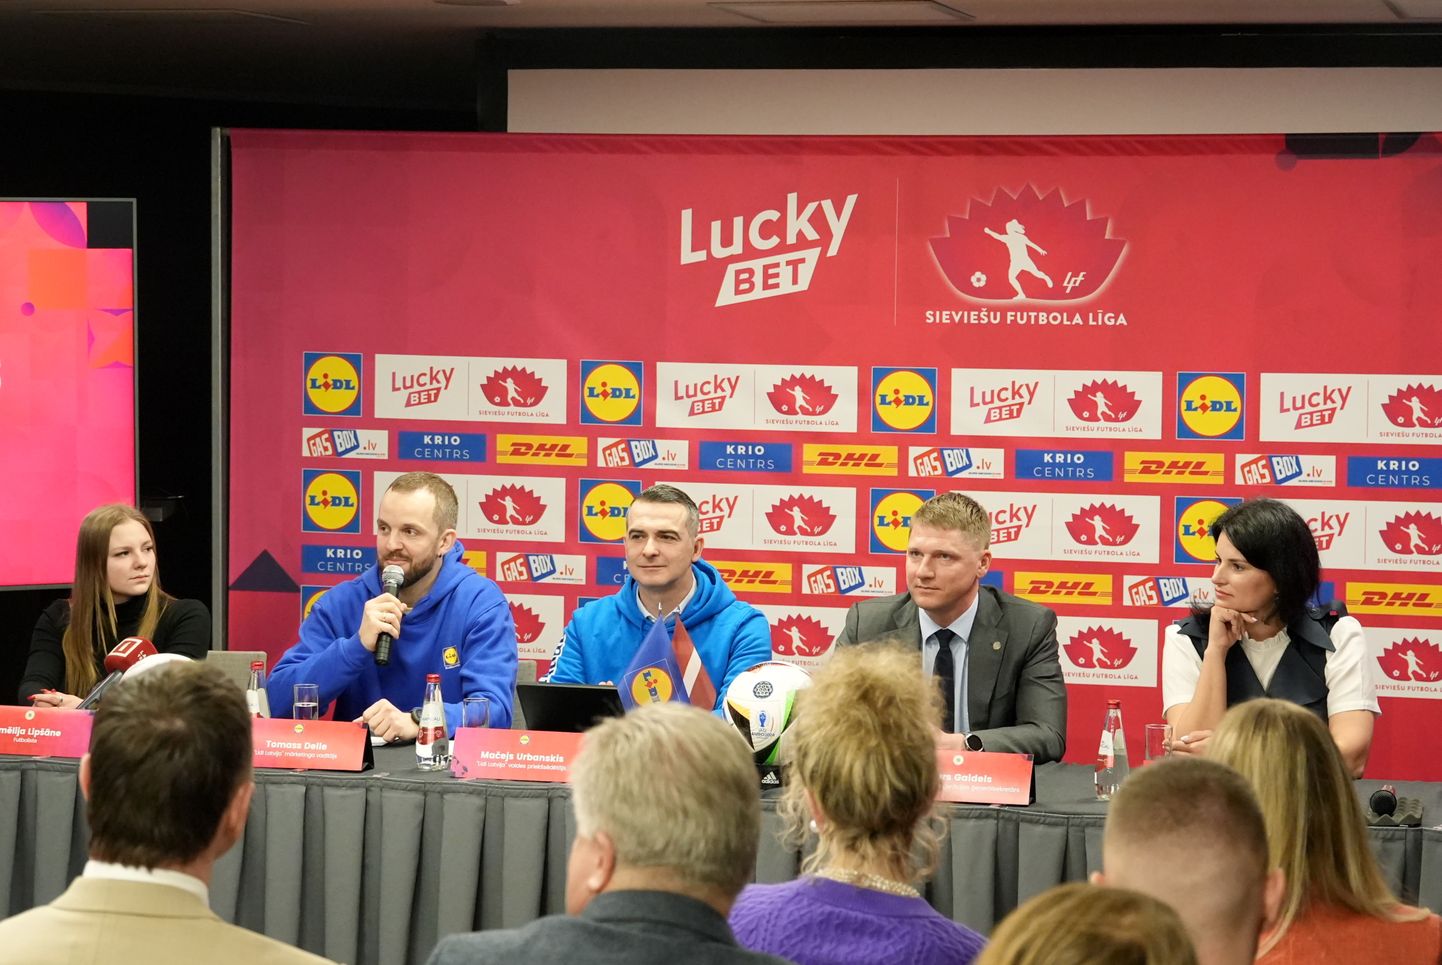 Futboliste Amēlija Lipšāne (no kreisās), "Lidl Latvija" mārketinga vadītājs Tomass Delle, "Lidl Latvija" valdes priekšsēdētājs Mačejs Urbanskis, Latvijas Futbola federācijas (LFF) ģenerālsekretārs Arturs Gaidels un LFF valdes locekle Anastasija Kučinska piedalās preses konferencē